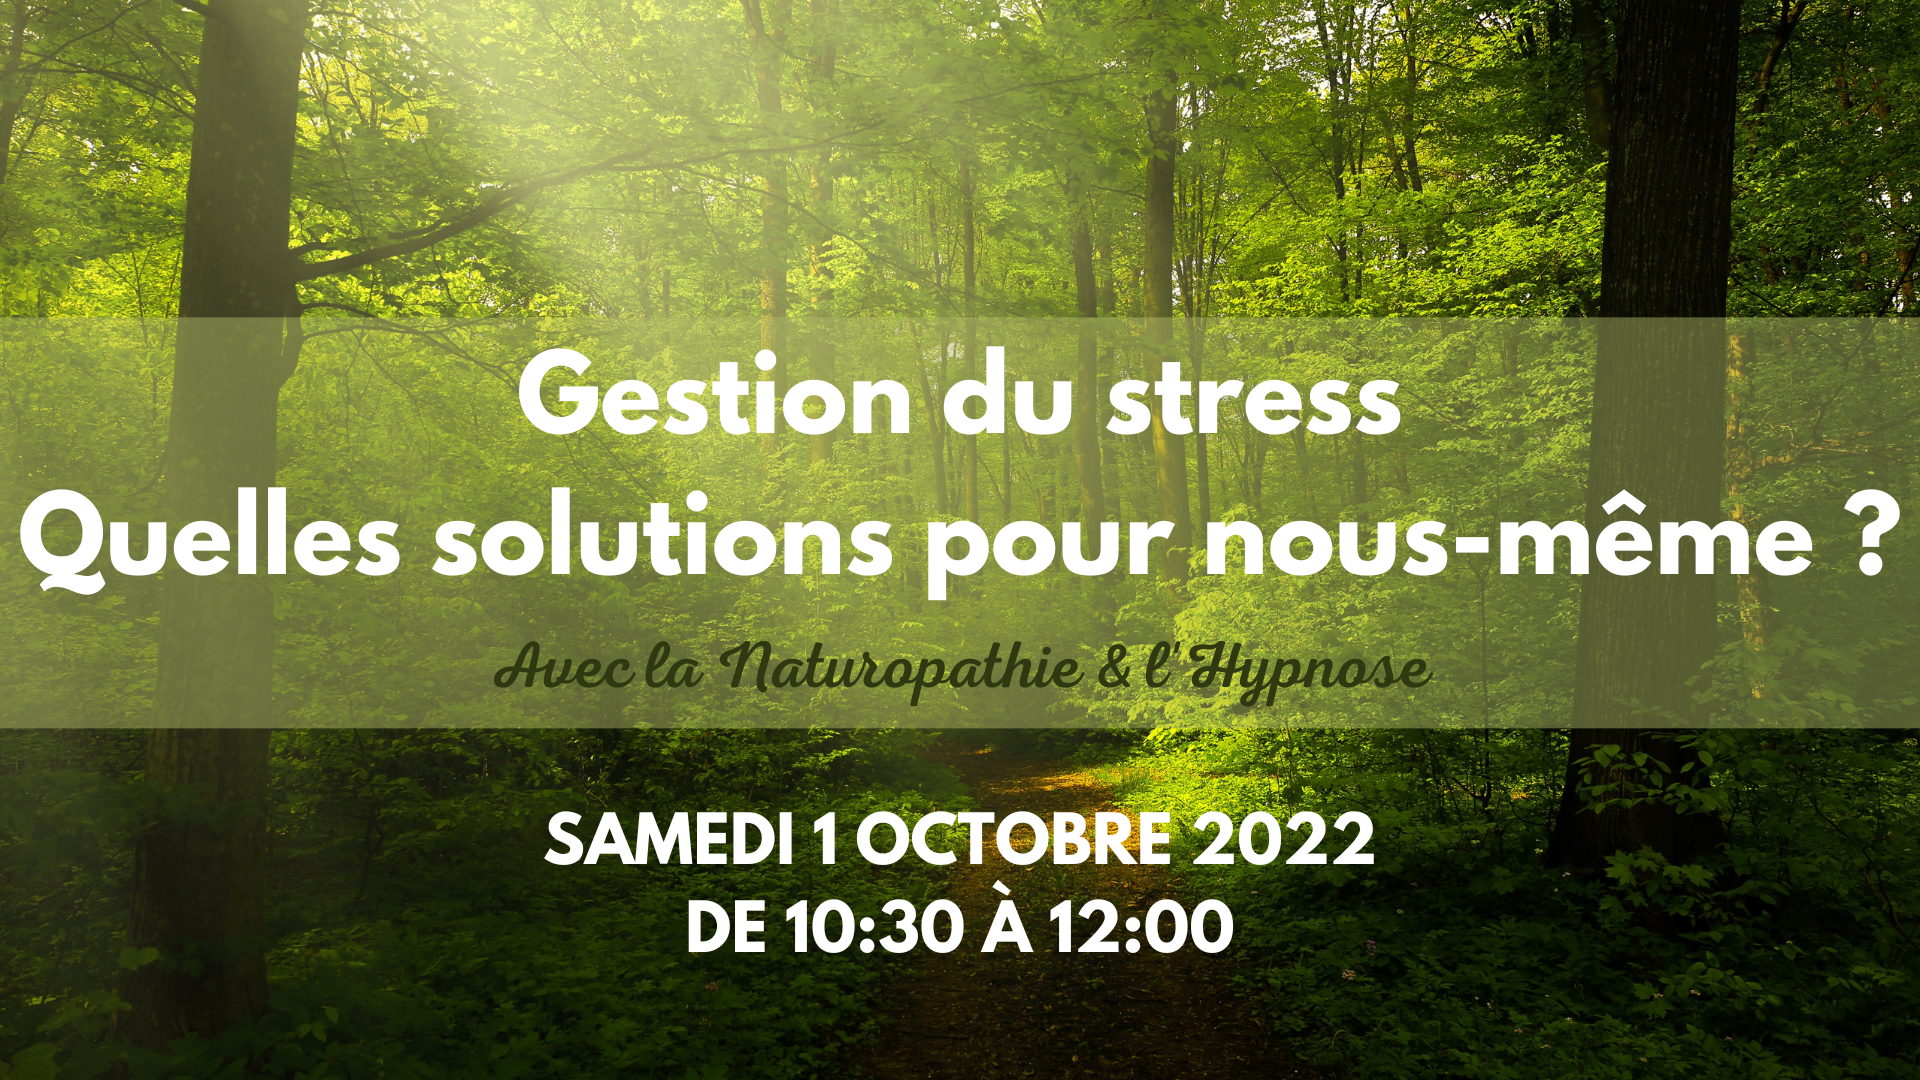 Visuel événement sur la gestion du stress - samedi 1er octobre